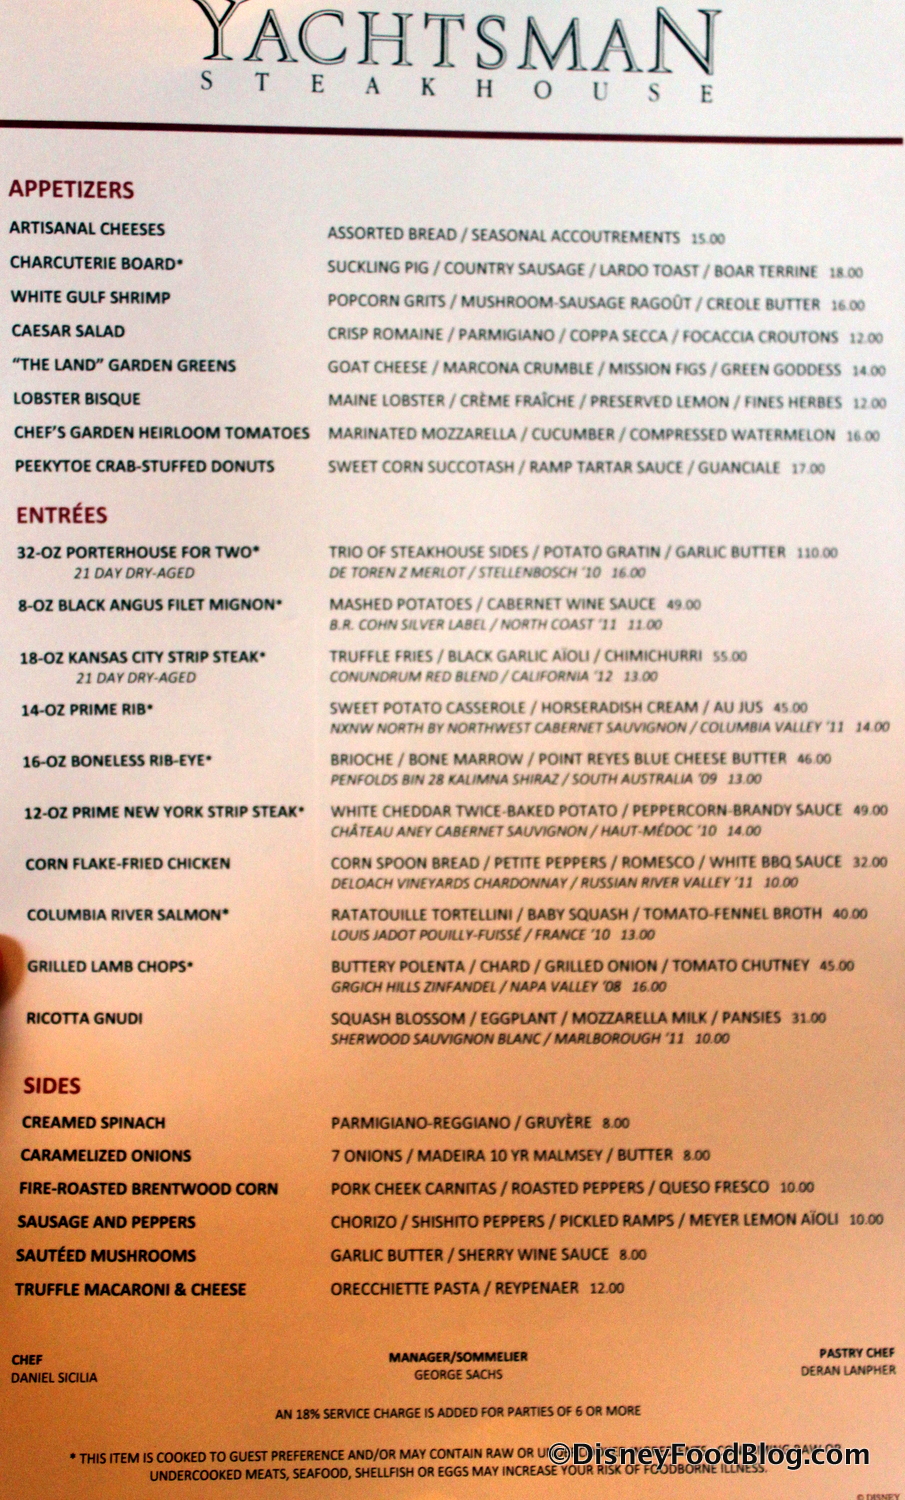 wdw yachtsman steakhouse menu